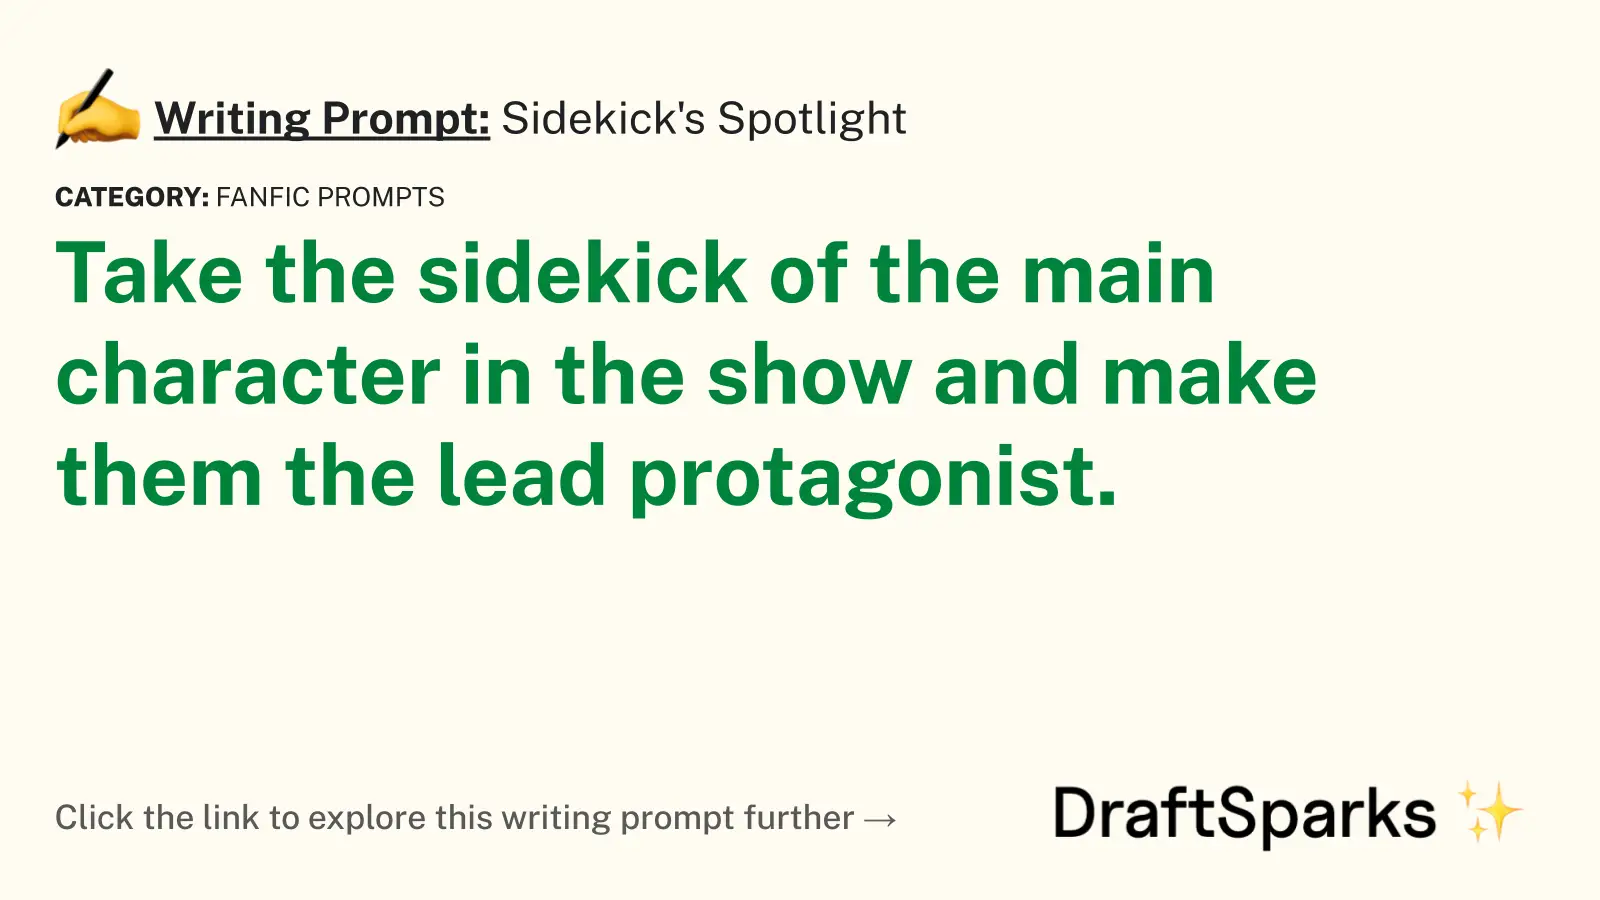 Sidekick’s Spotlight